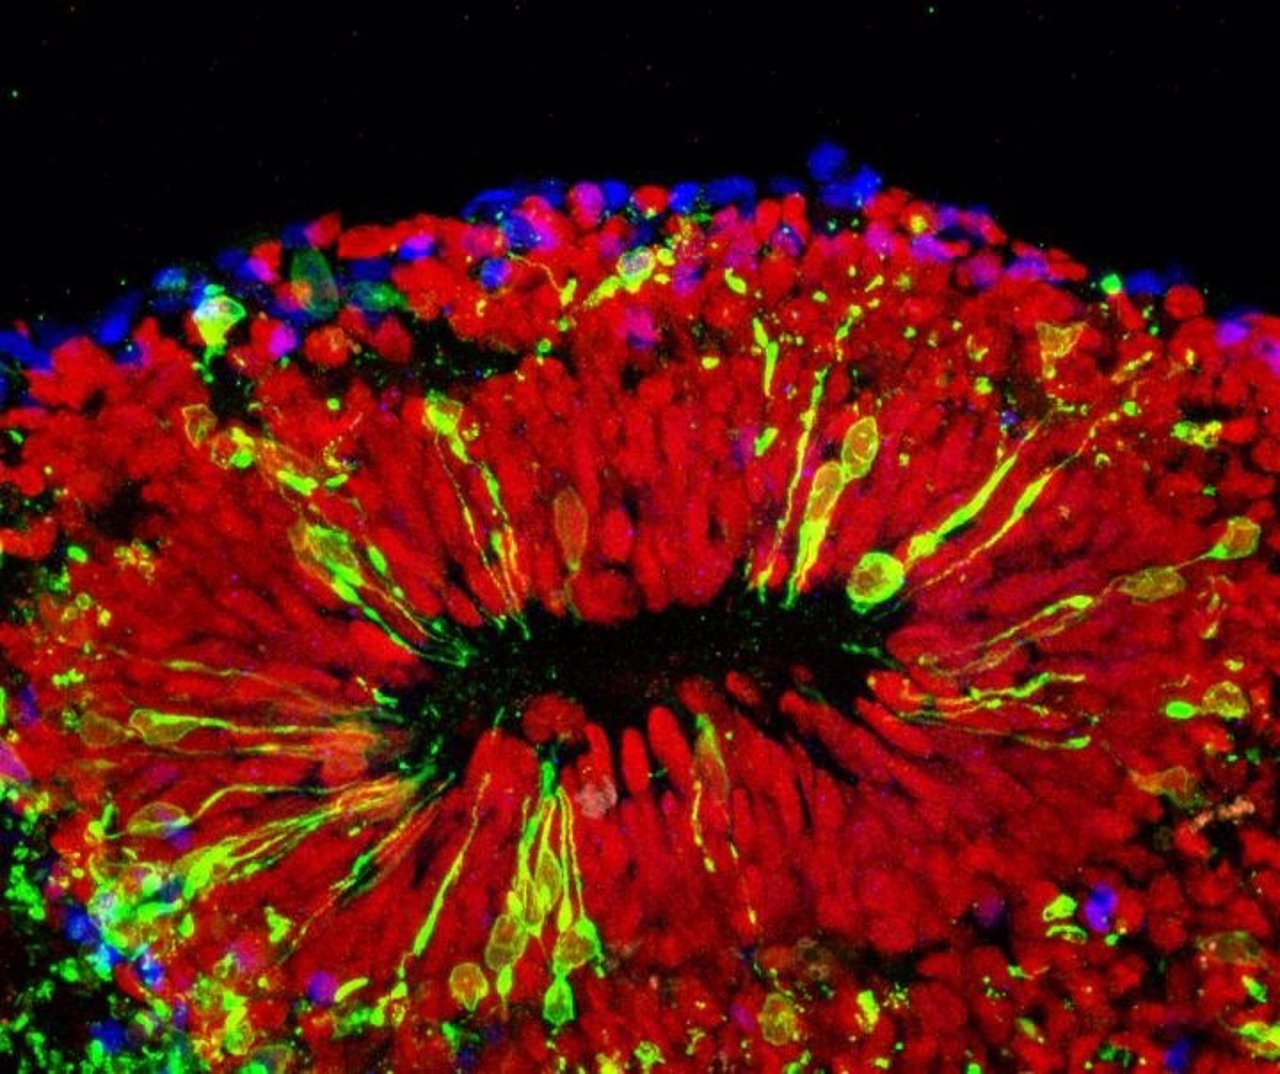 Minicerebros evidencian el daño del virus en el cerebro del feto